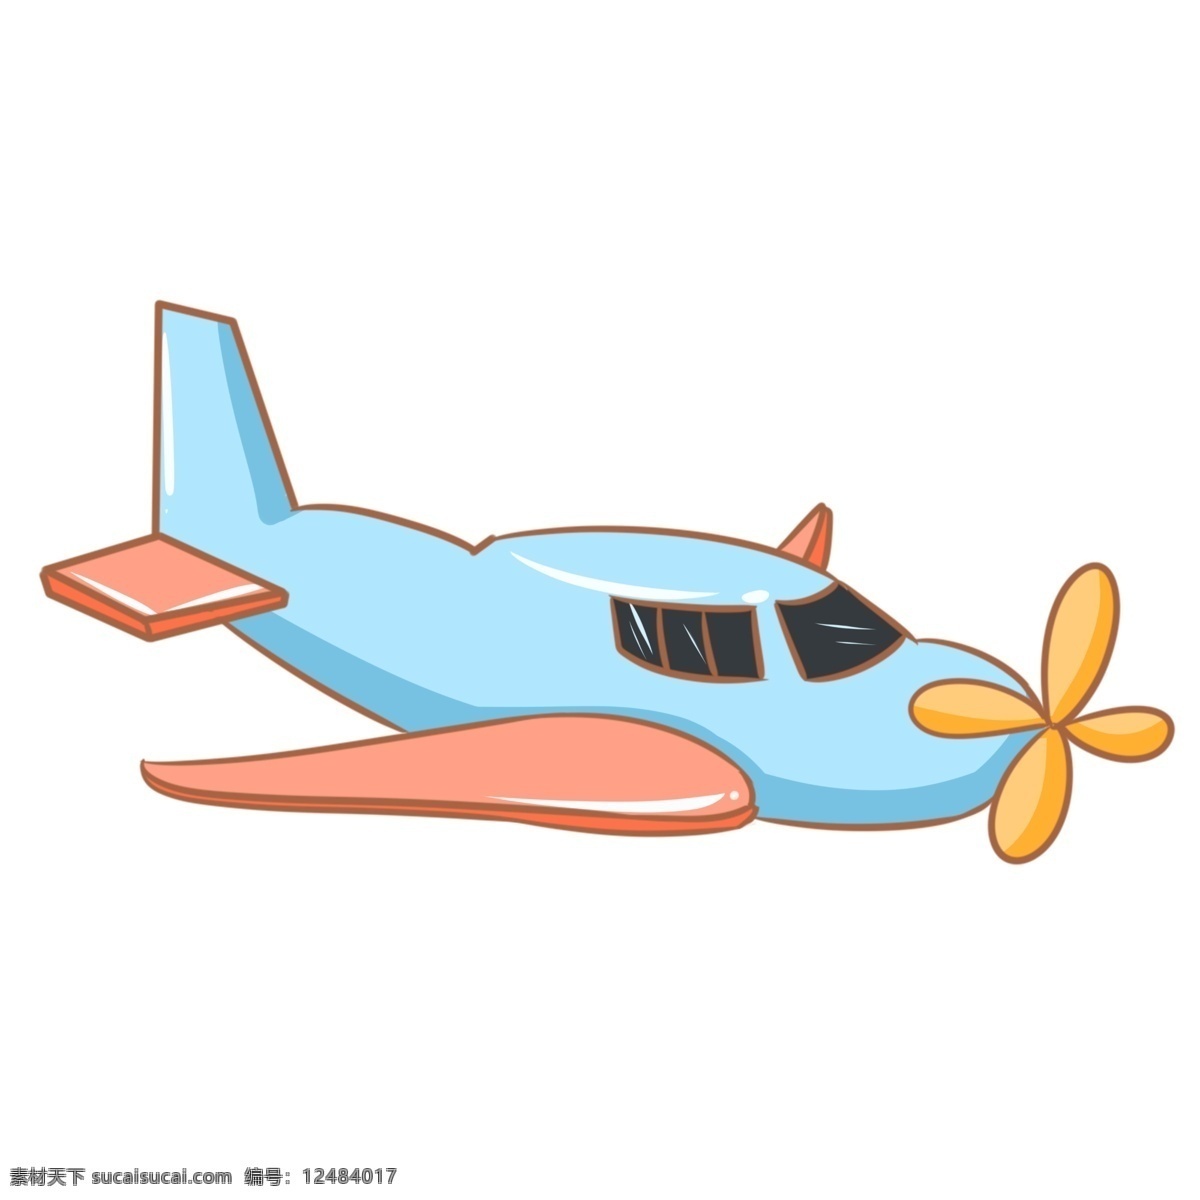 创意玩具飞机 飞机 交通工具 玩具